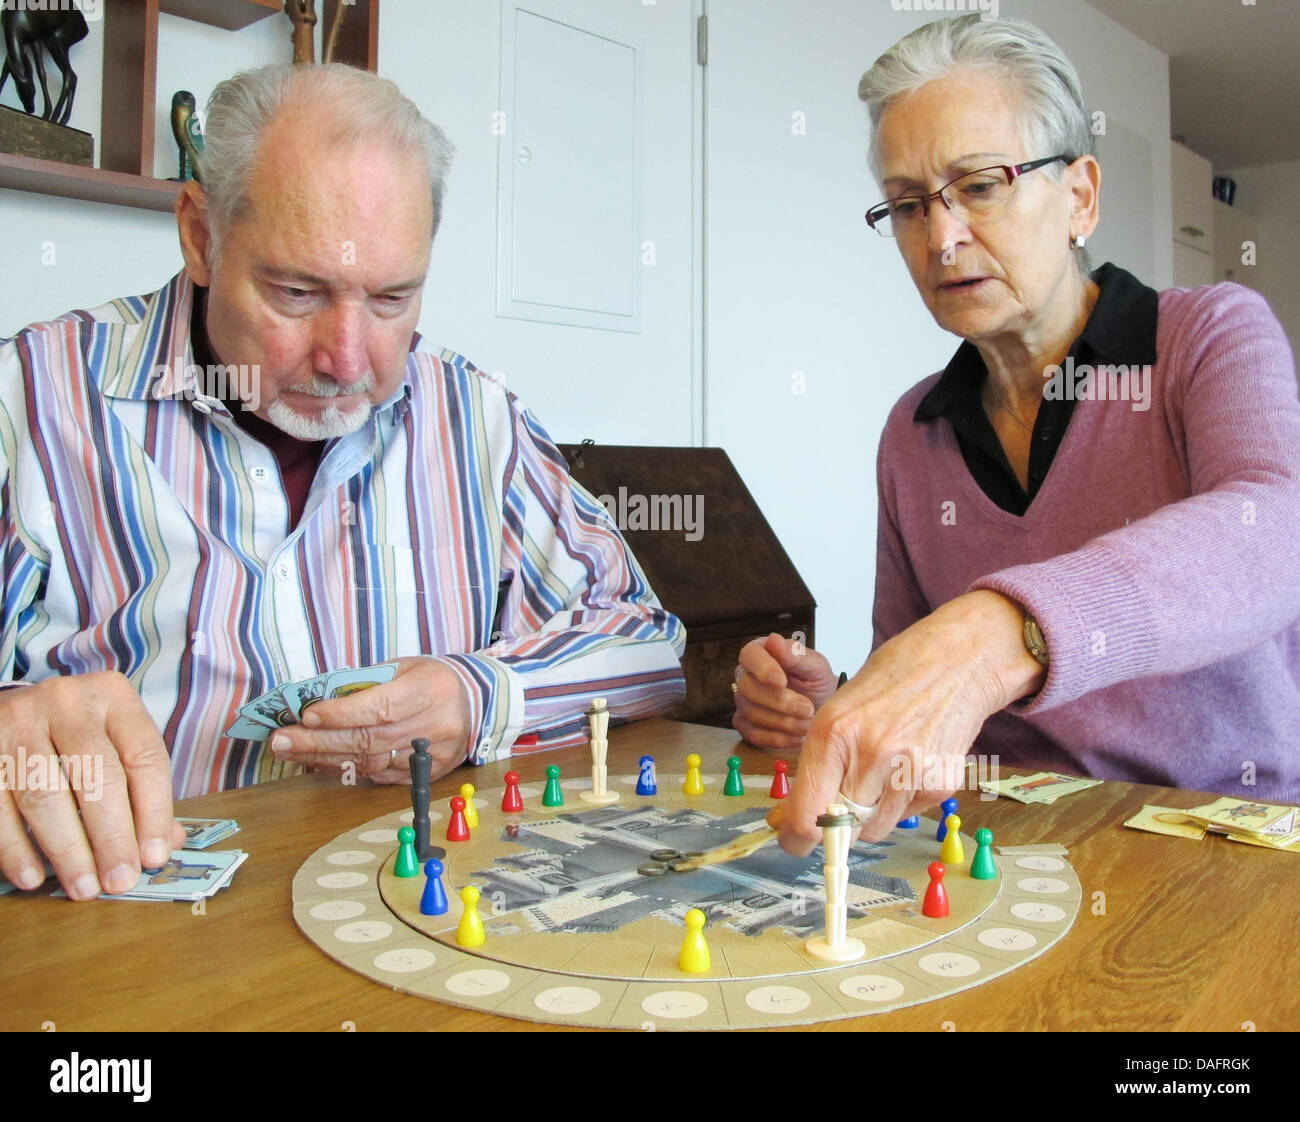 Desarrollador de Juegos Wolfgang Kramer (L) y su esposa Ursula desempeñar  un prototipo del nuevo juego de mesa 'Artus' en su piso en Stuttgart,  Alemania, 07 de diciembre de 2011. Wolfgang Kramer